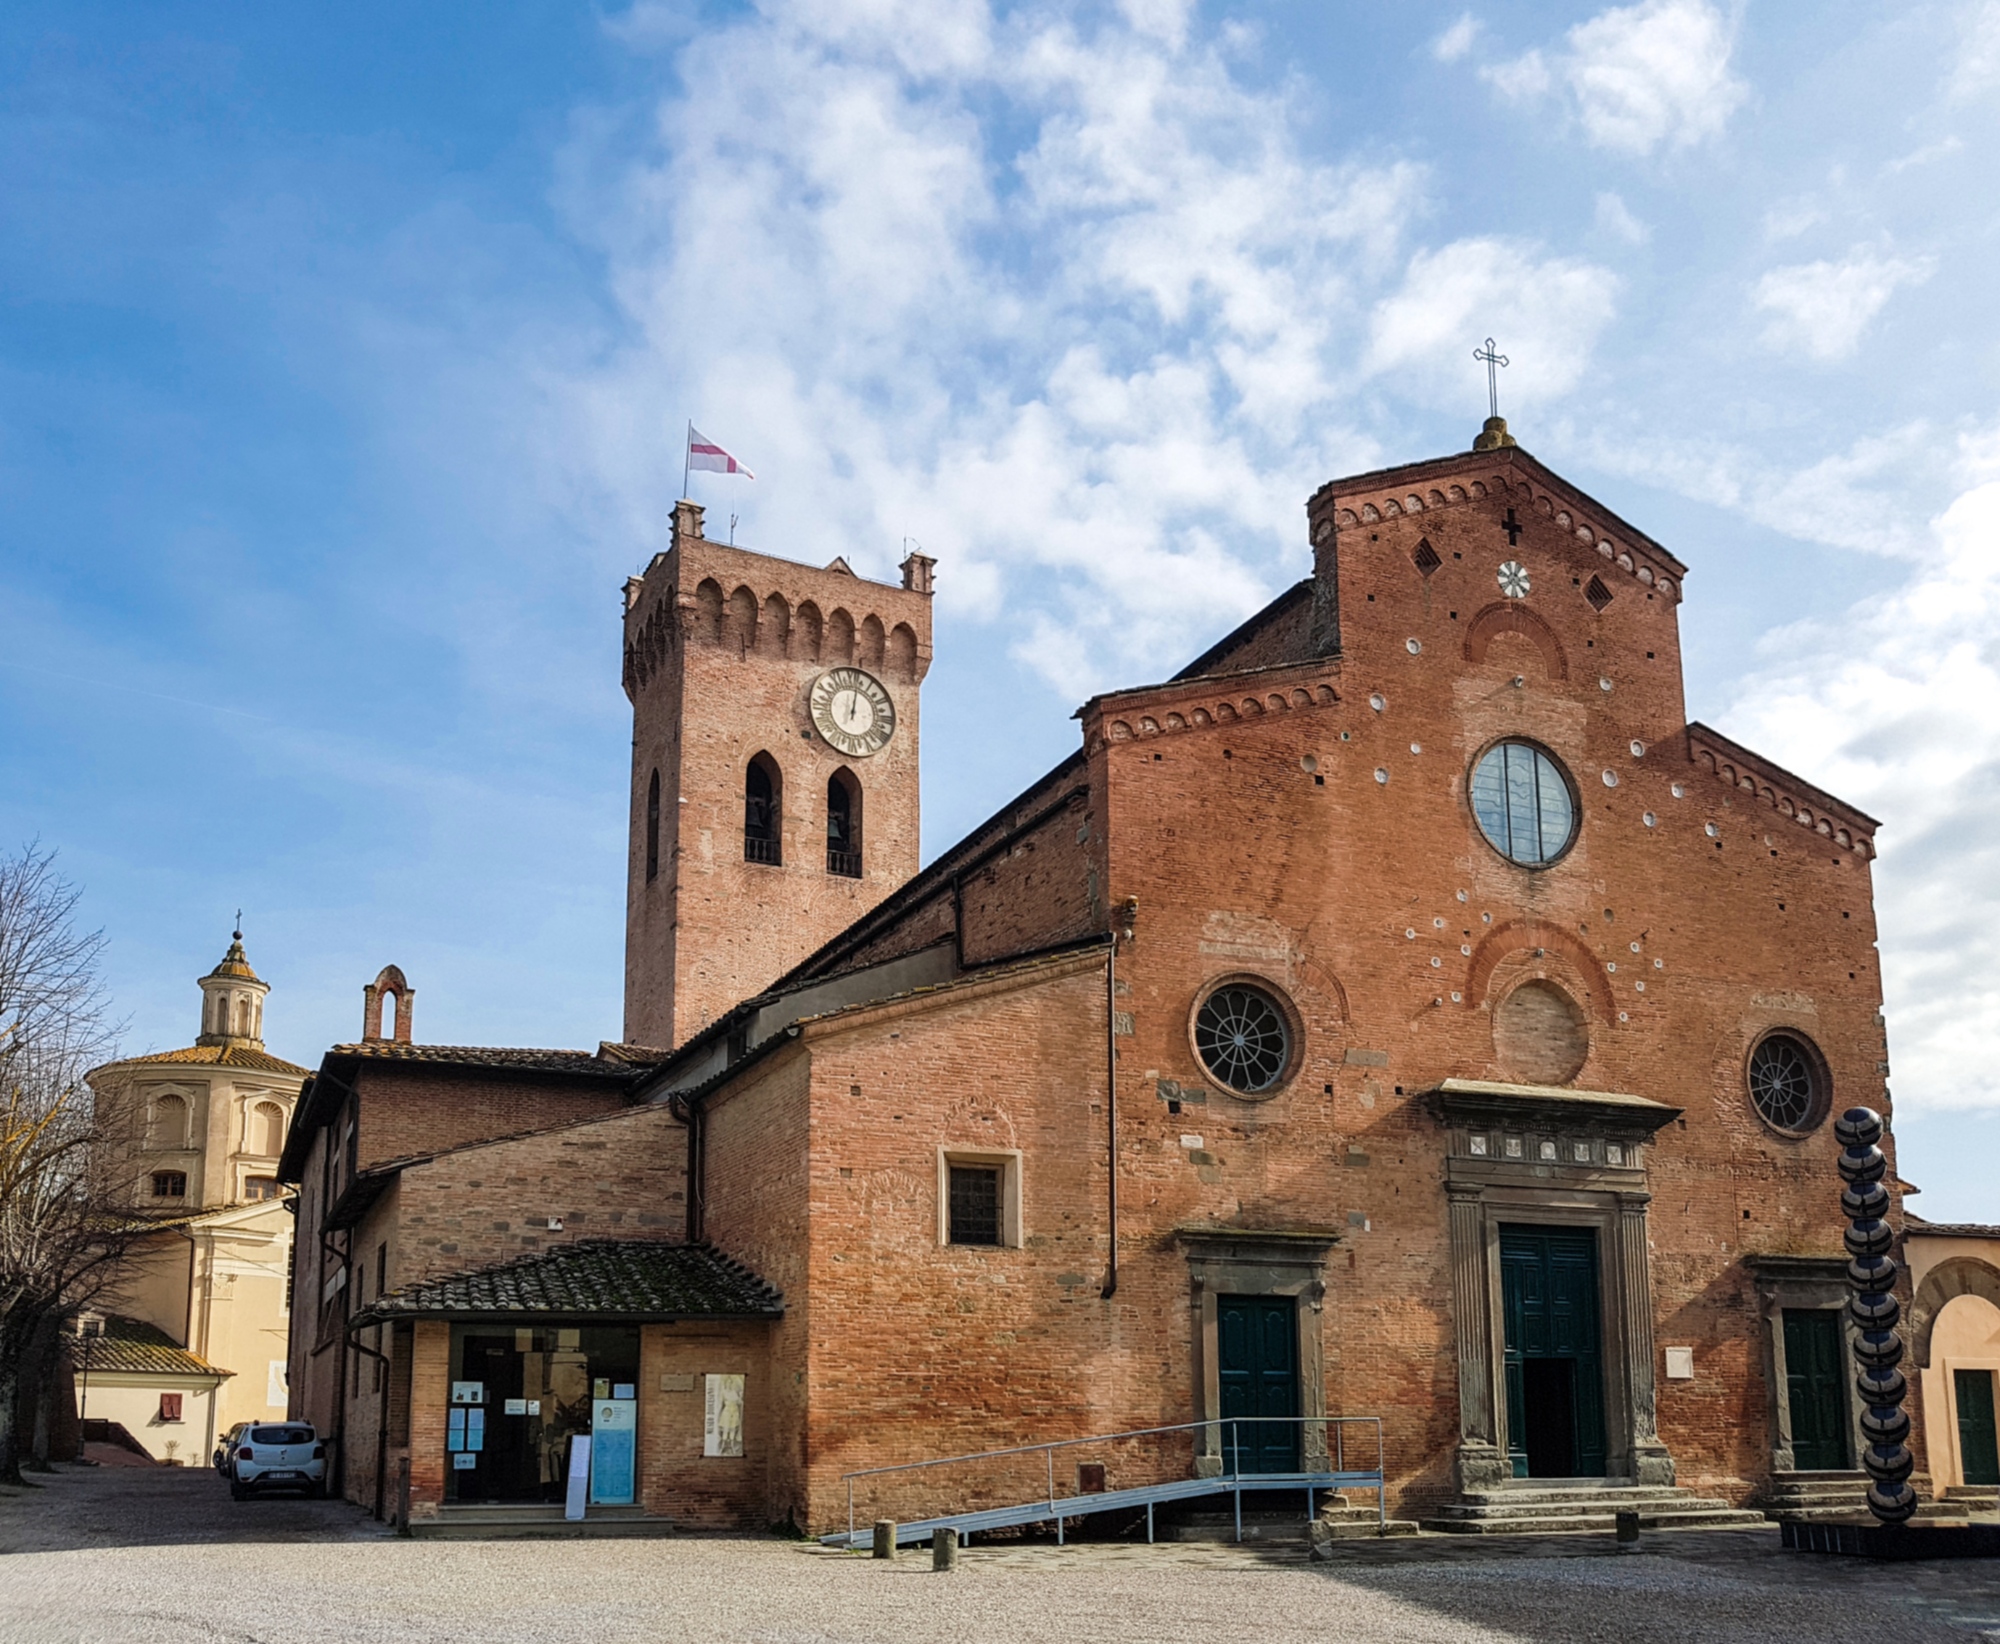 Duomo of San Miniato